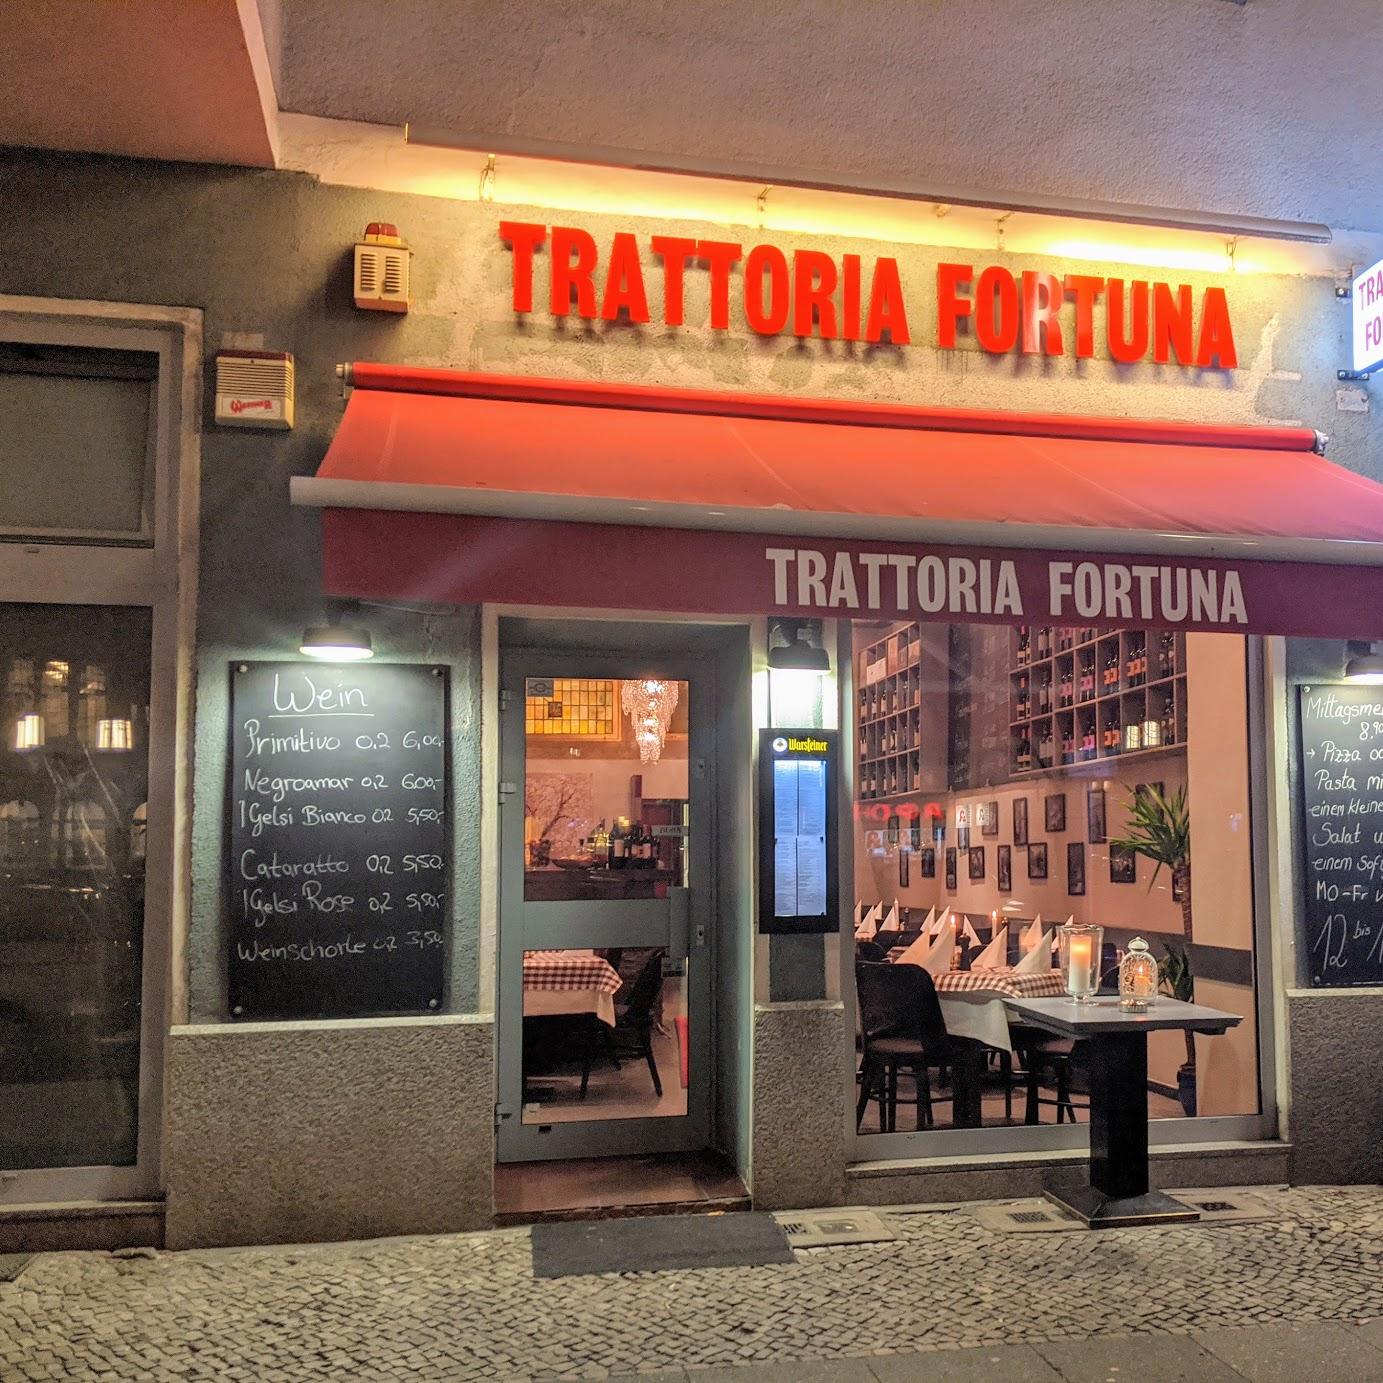 Restaurant "Trattoria Fortuna" in Berlin